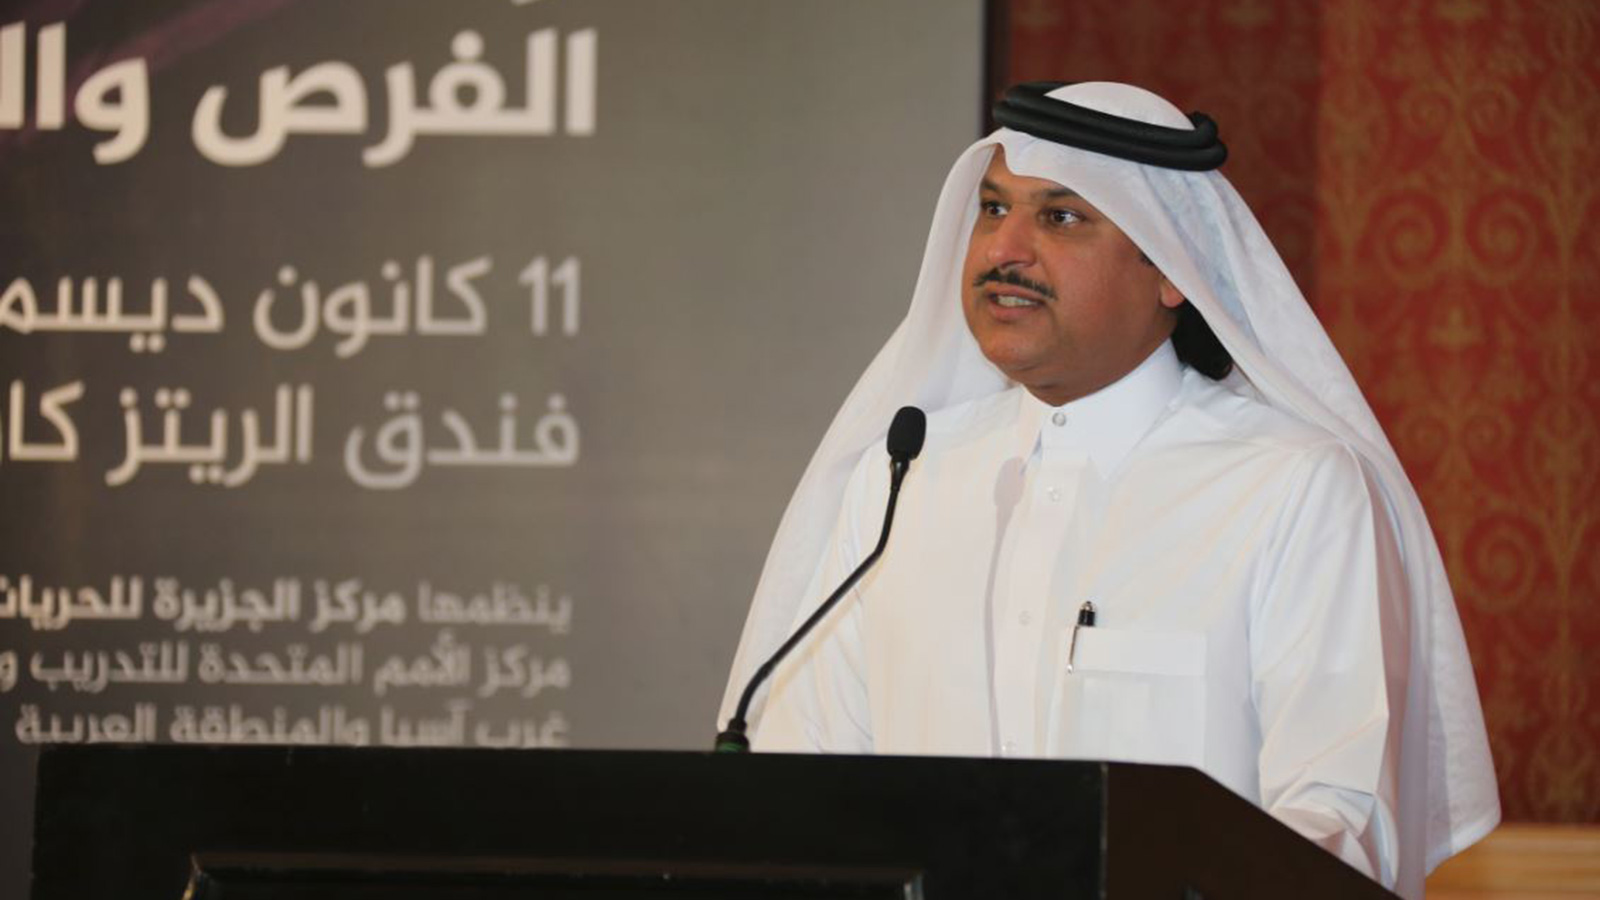 خالد جوهر المدير العام لشبكة الجزيرة بالوكالة (الجزيرة)